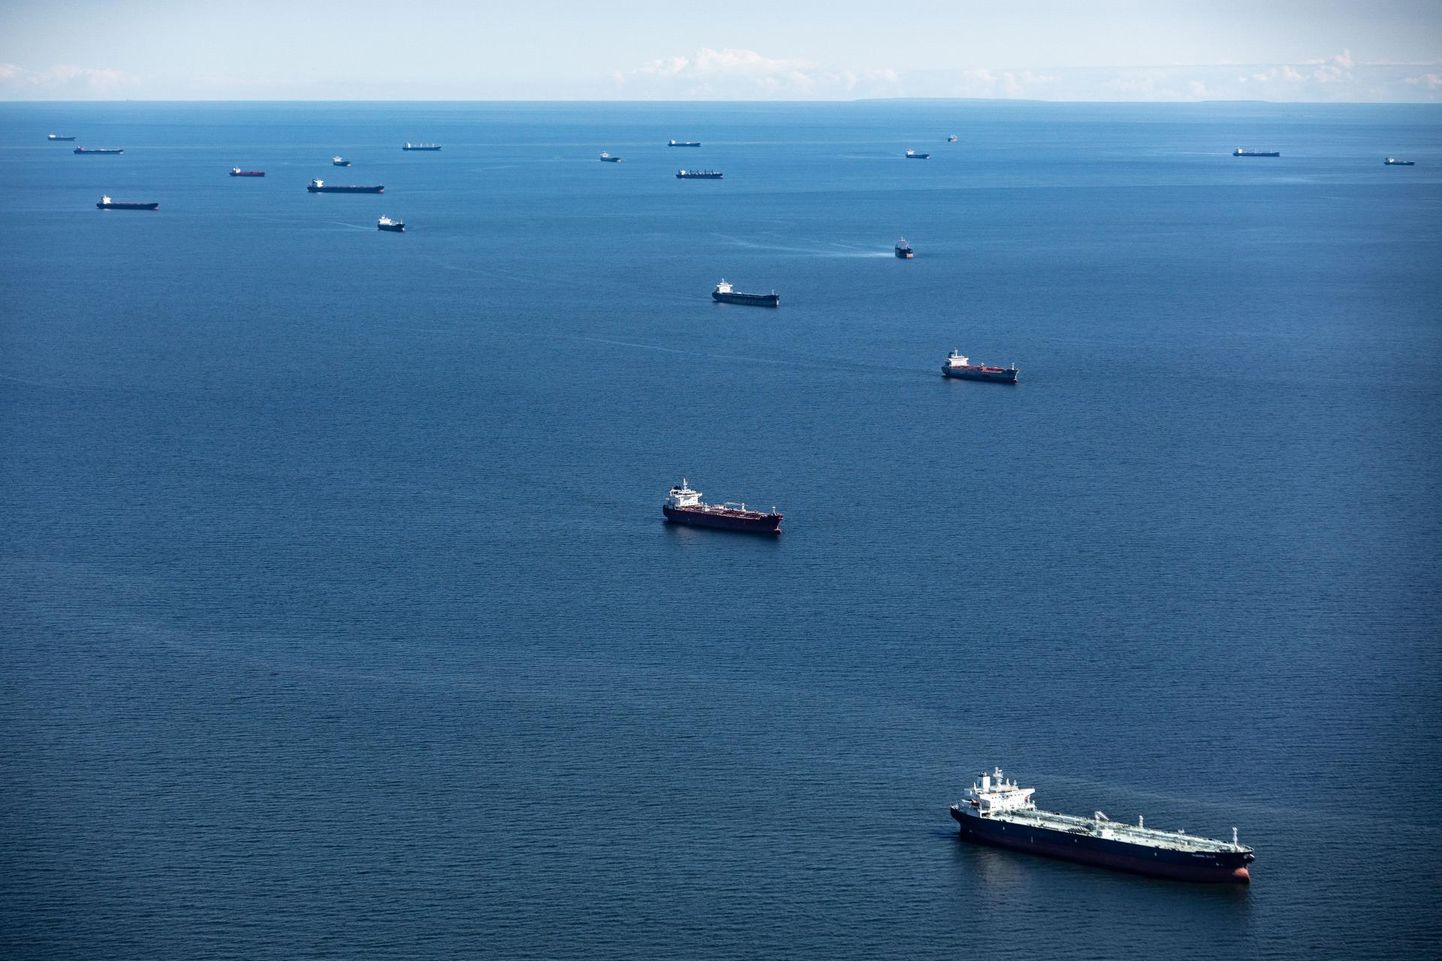 Kui Peterburi külje alt sadamates väljuvad tankerid vedasid varem naftat Euroopasse, siis nüüd tuleb see nafta viia teisele poole maakera – see on iseenesest kallim.